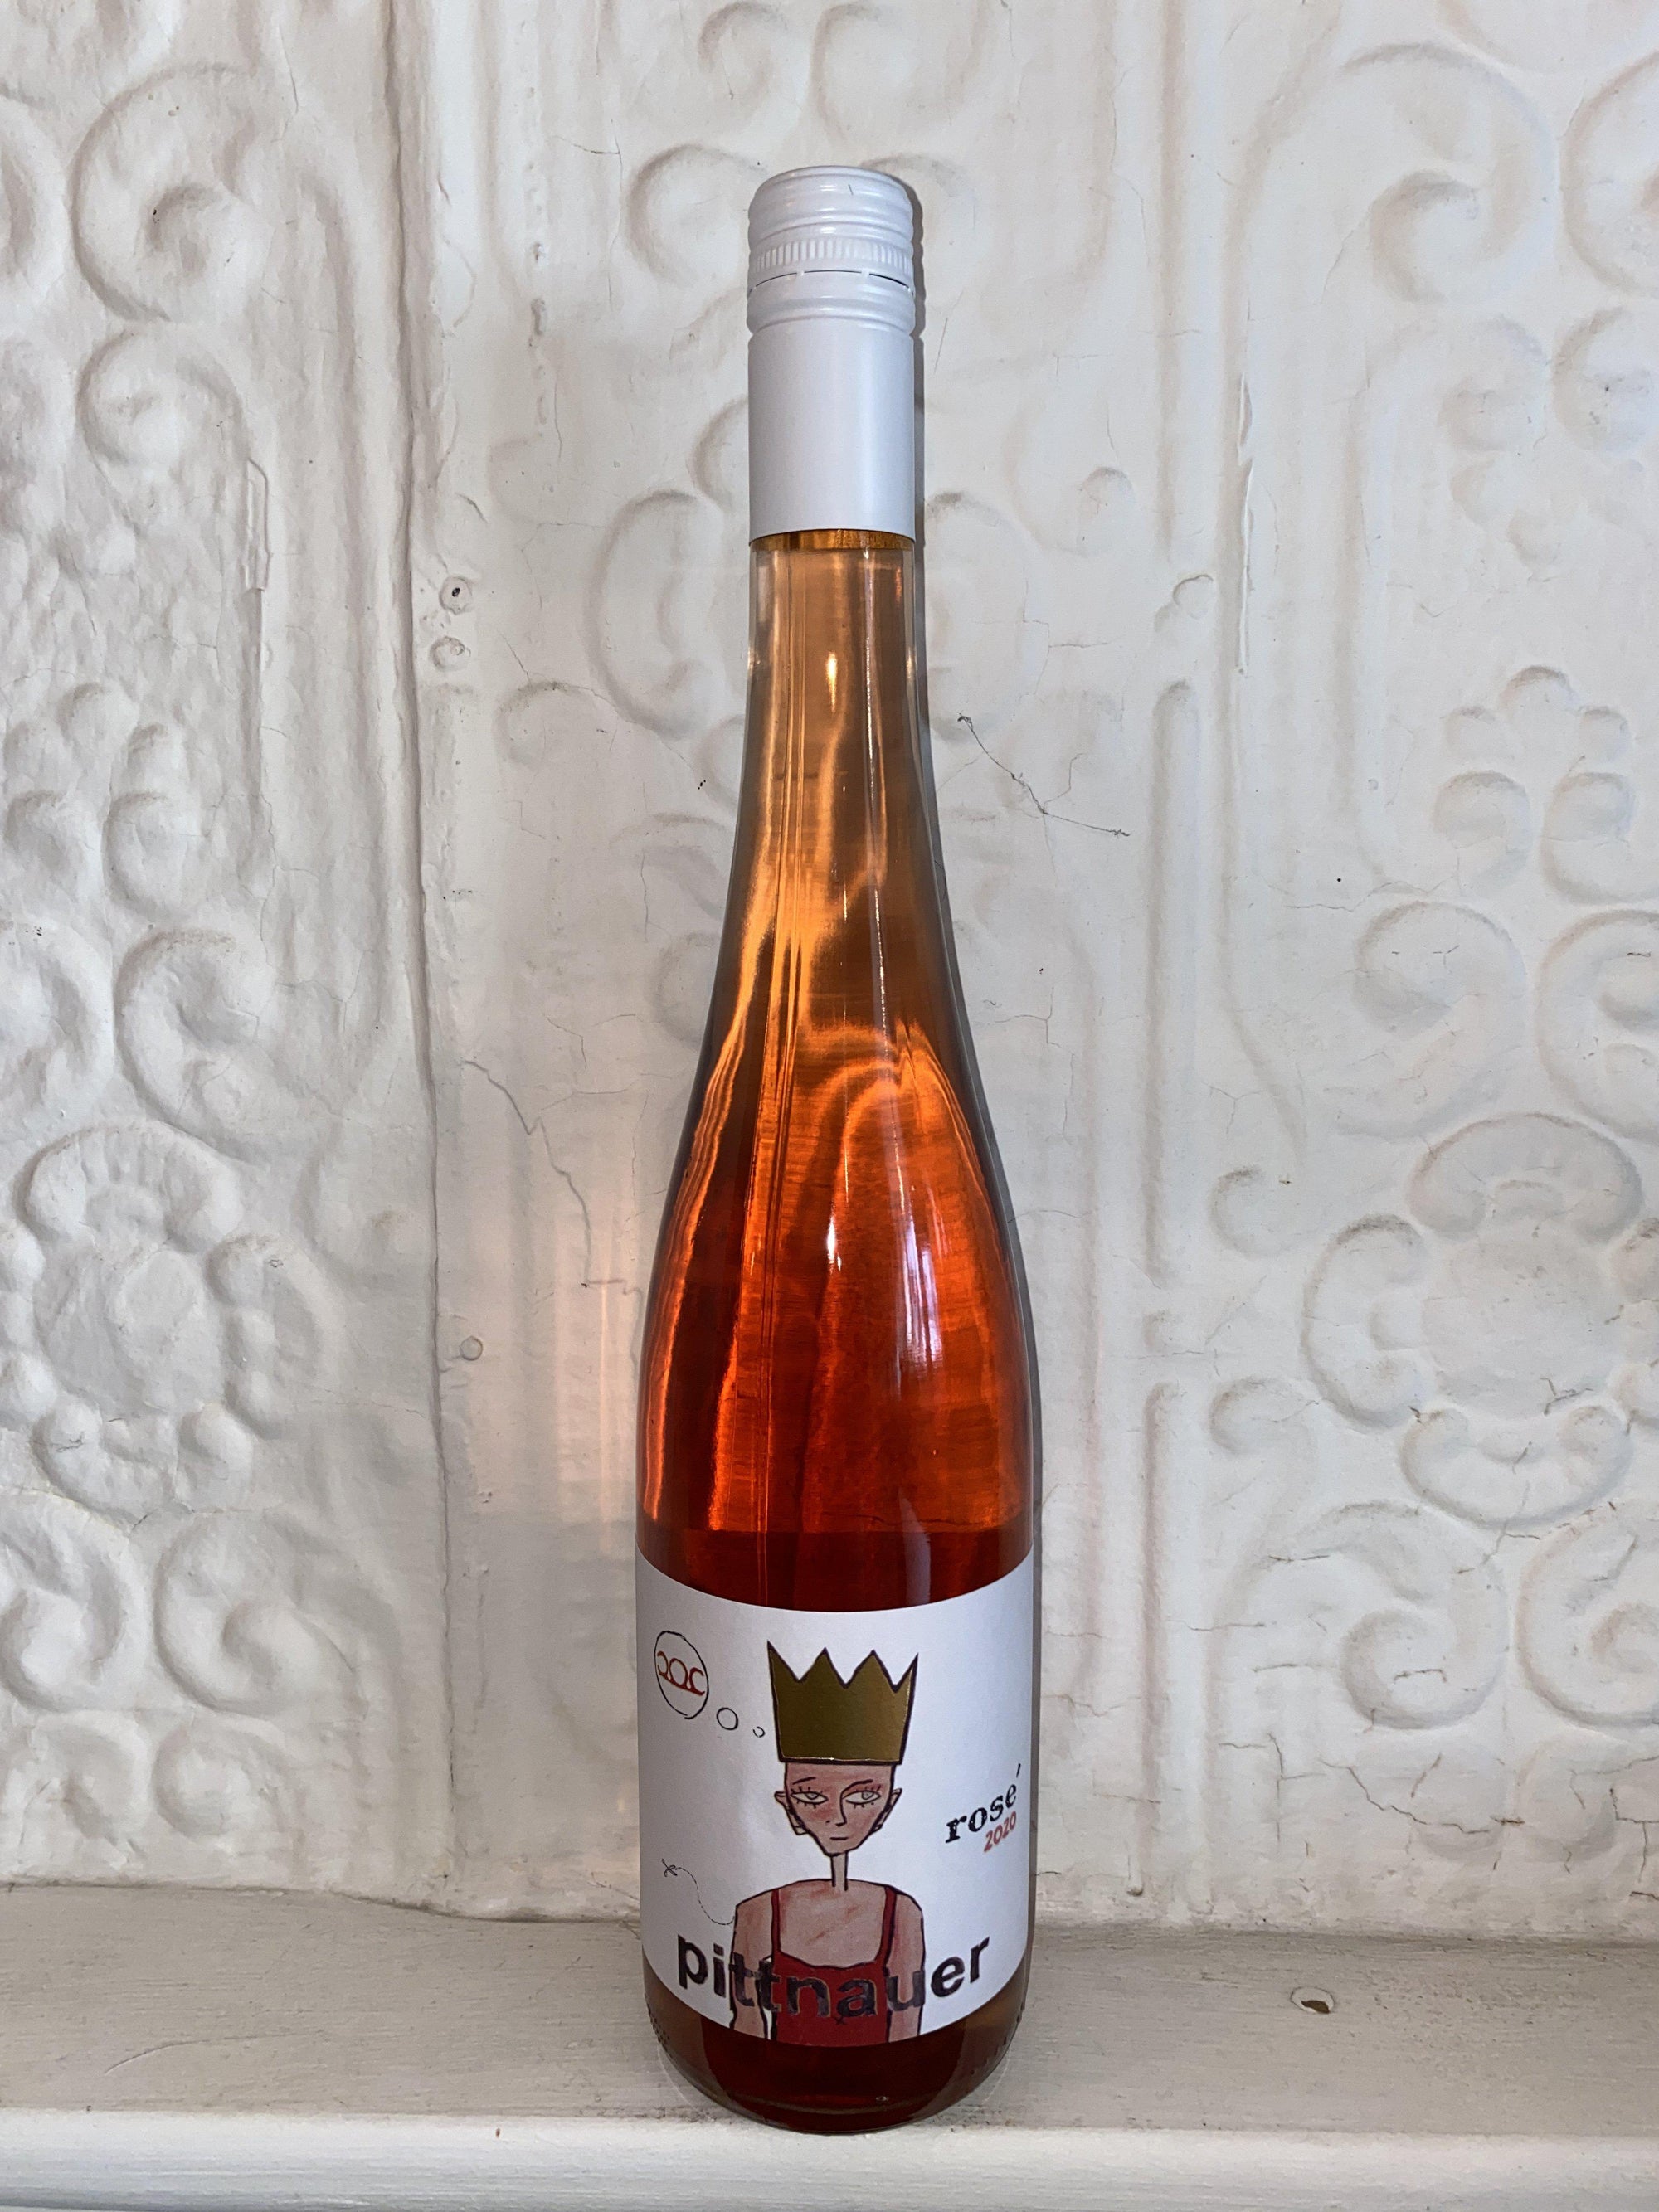 Konig Rose, Weingut Pittnauer 2020 (Burgenland, Austria)-Wine-Bibber & Bell